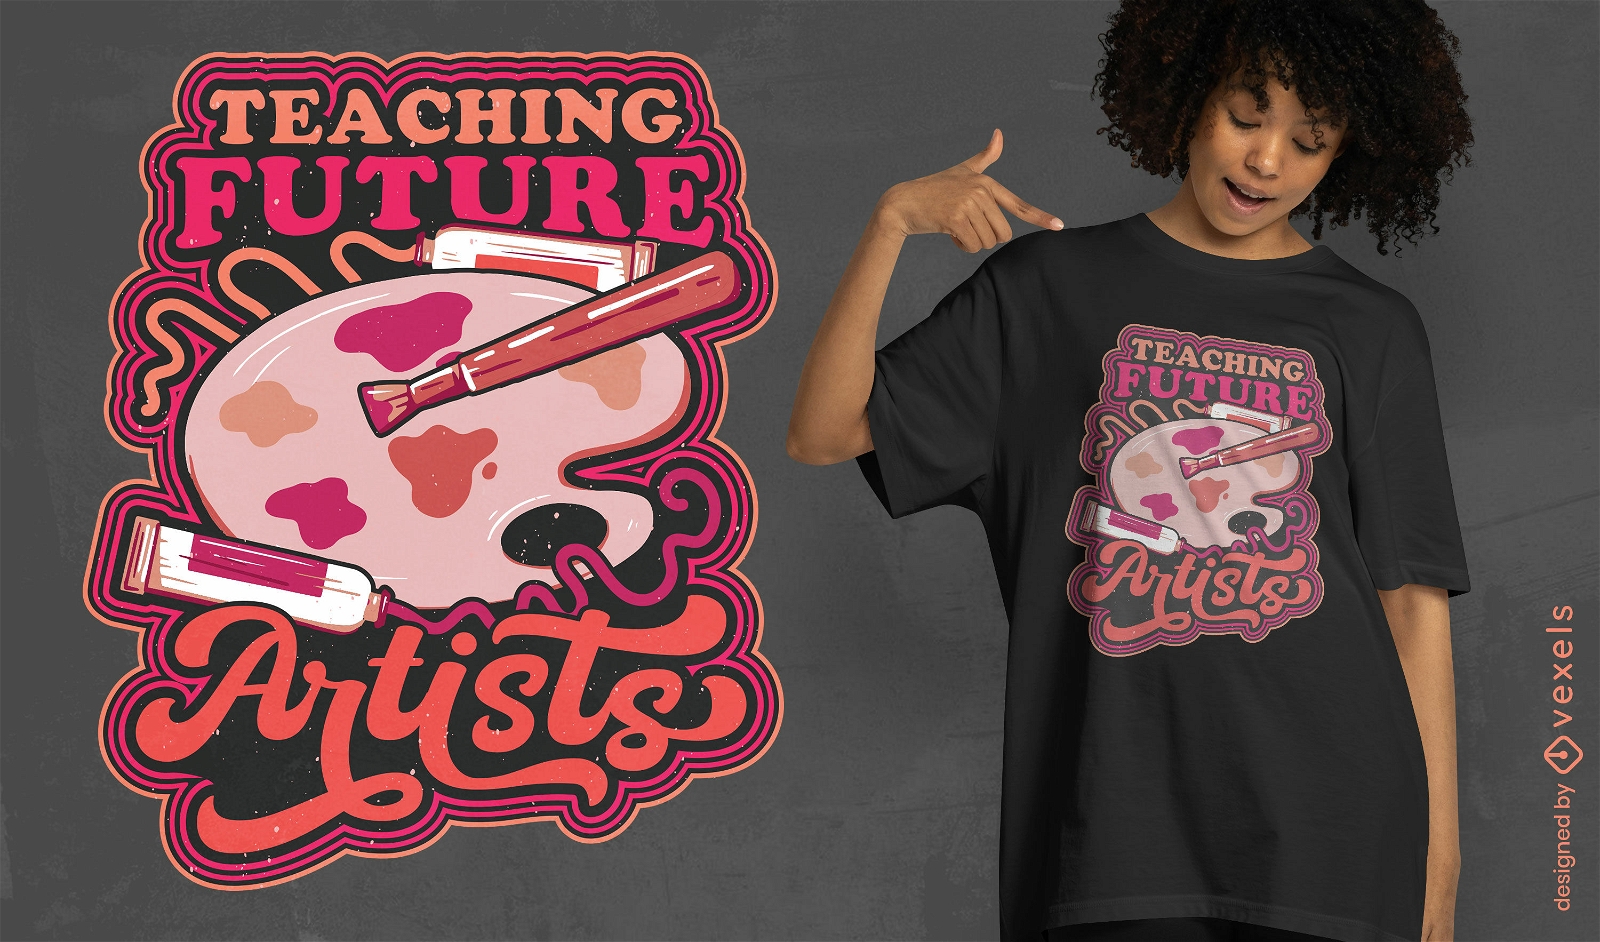 Teaching future artists t-shirt design